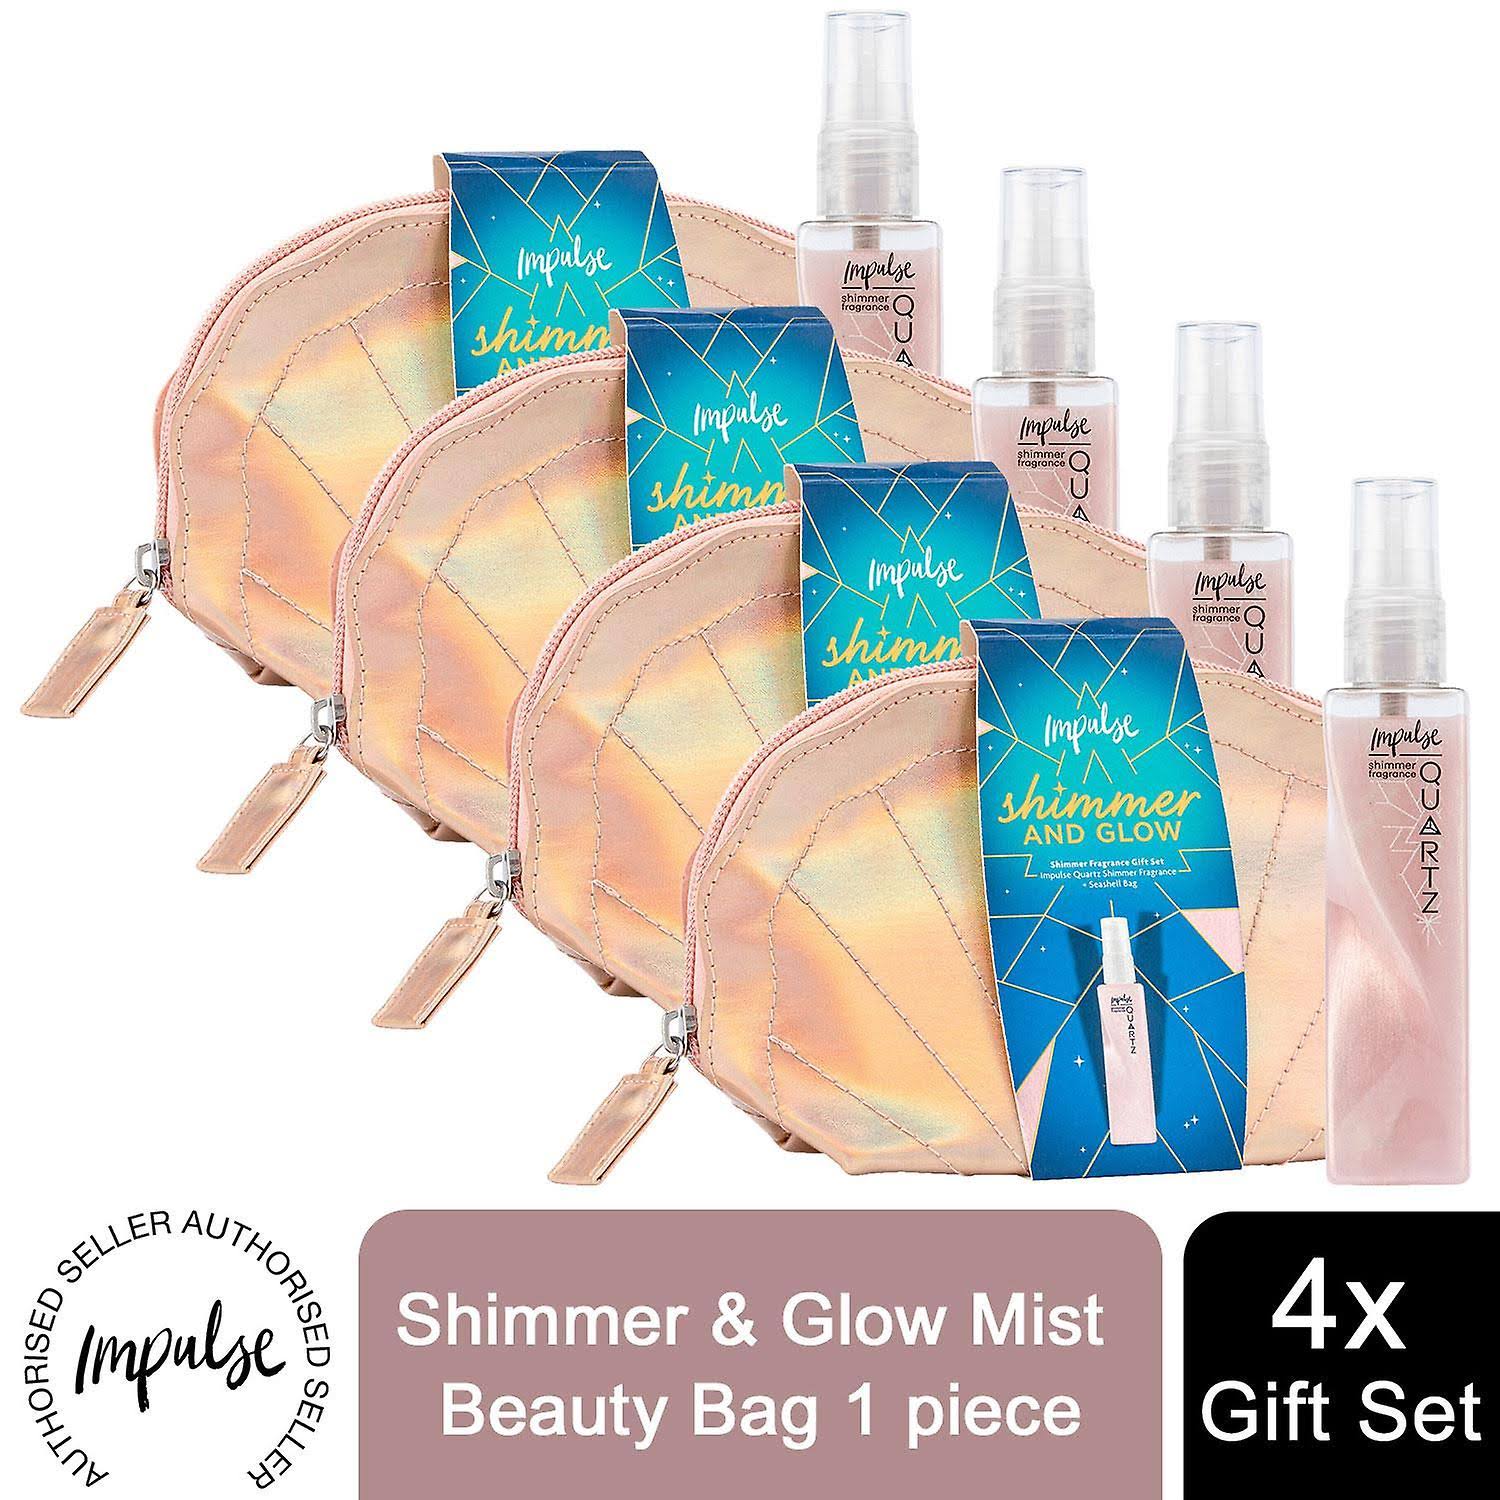 Impulse Shimmer & Glow Mist Beauty Bag Gift Set